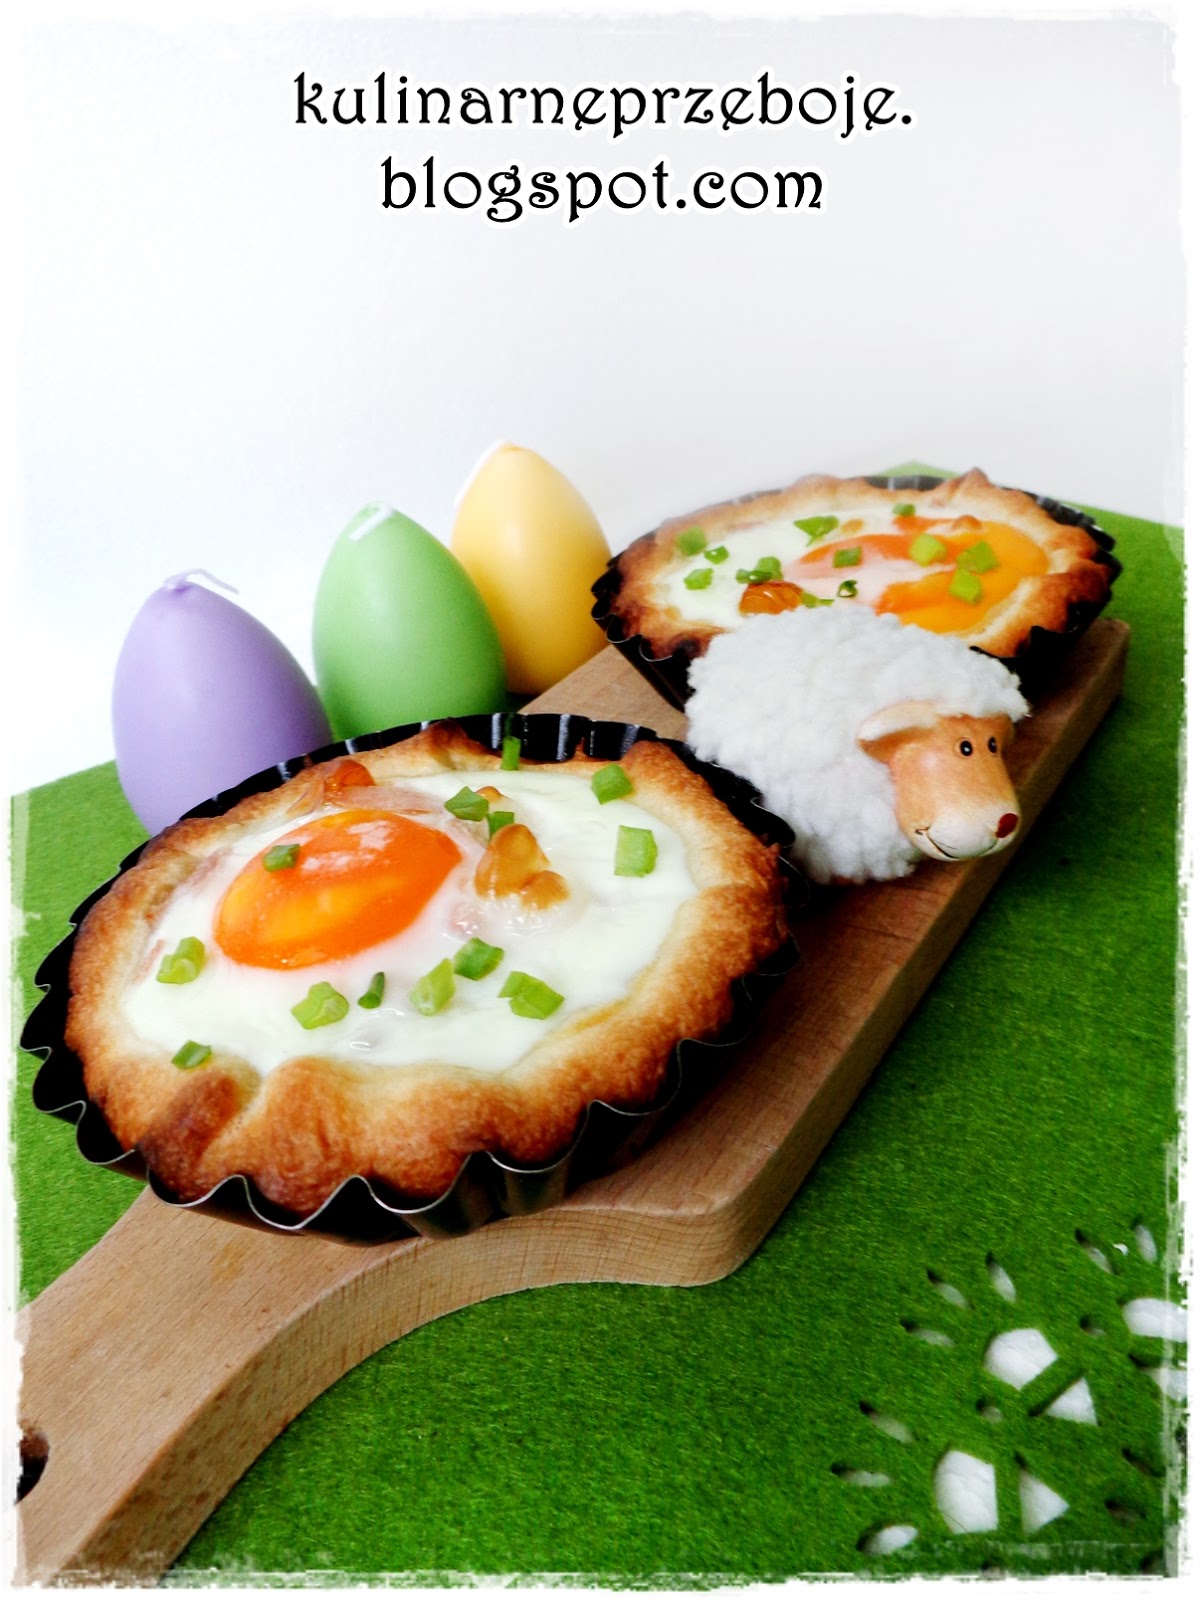 Jajka zapiekane w cieście francuskim - pomysłowe śniadanie